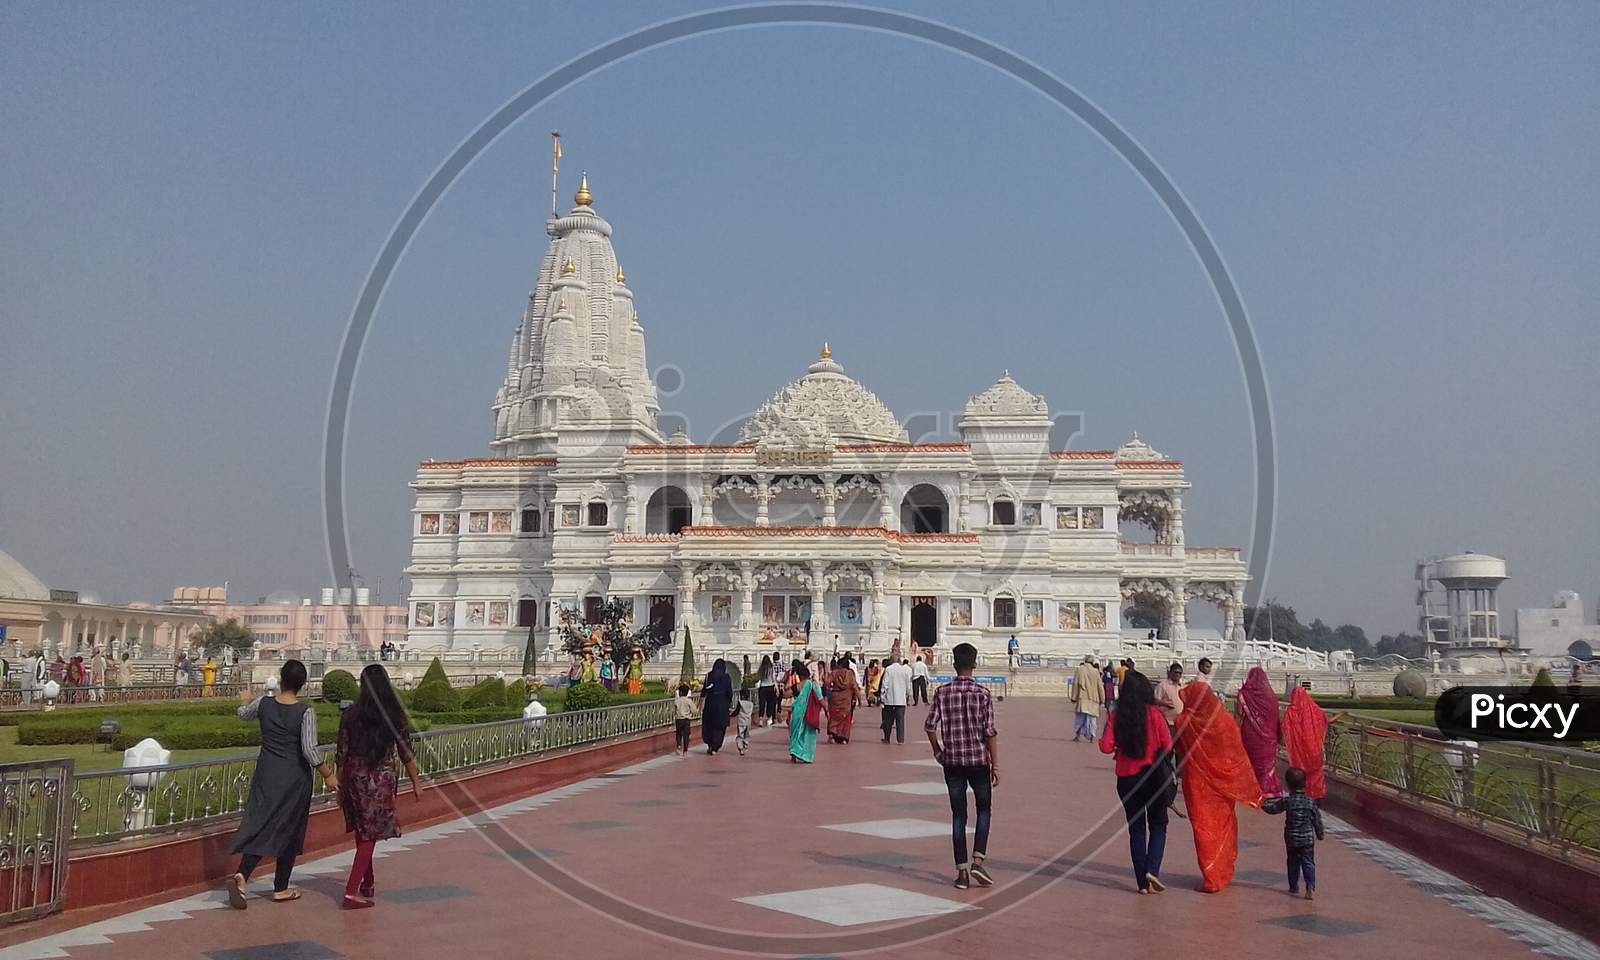 awesome beautiful Shri Prem Mandir the temple of Love in Vrindavan built by jagadguru kripalu ji maharaj